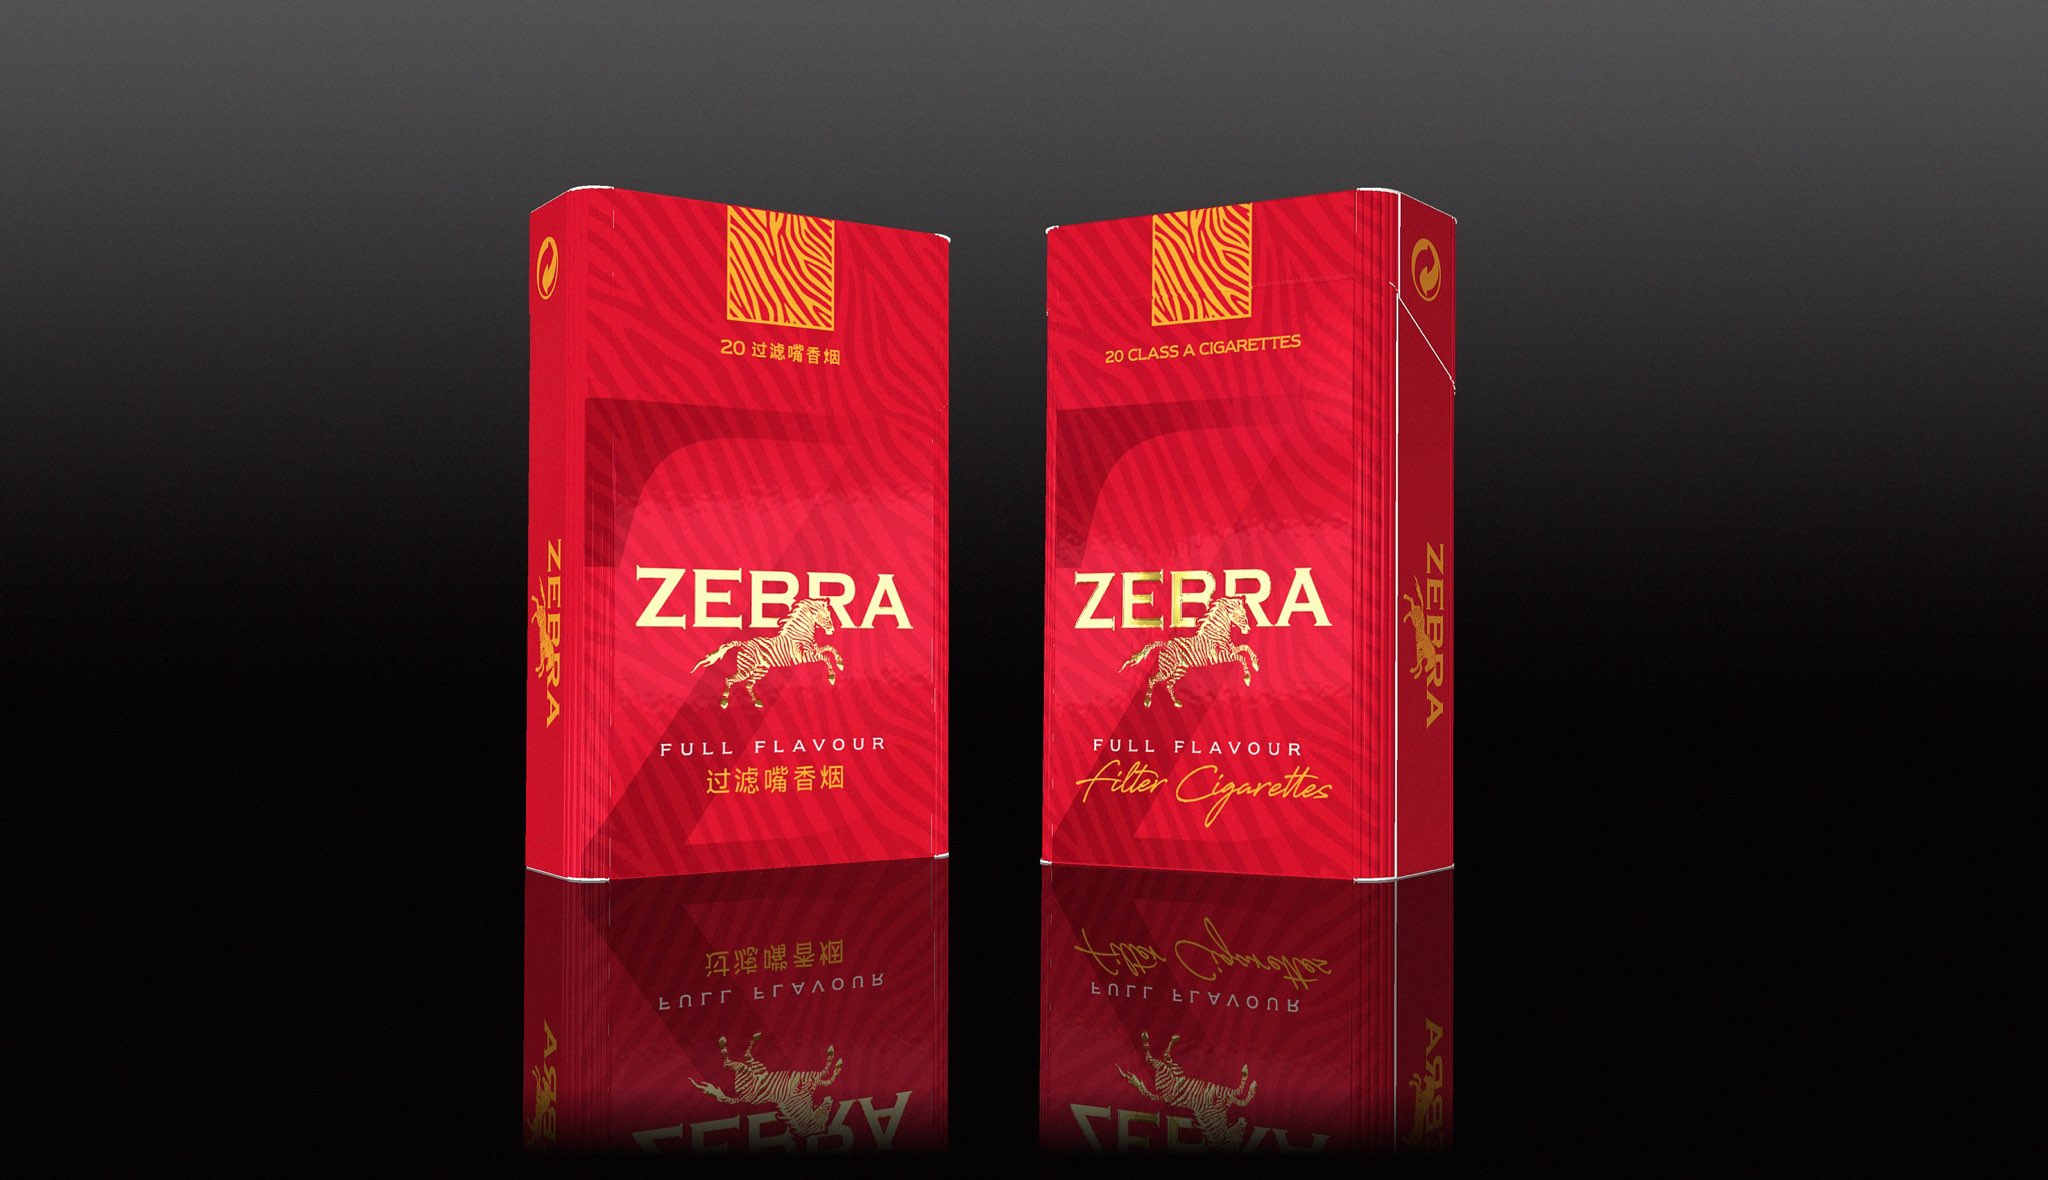 Zebra Full Flavor Filter Cigarette